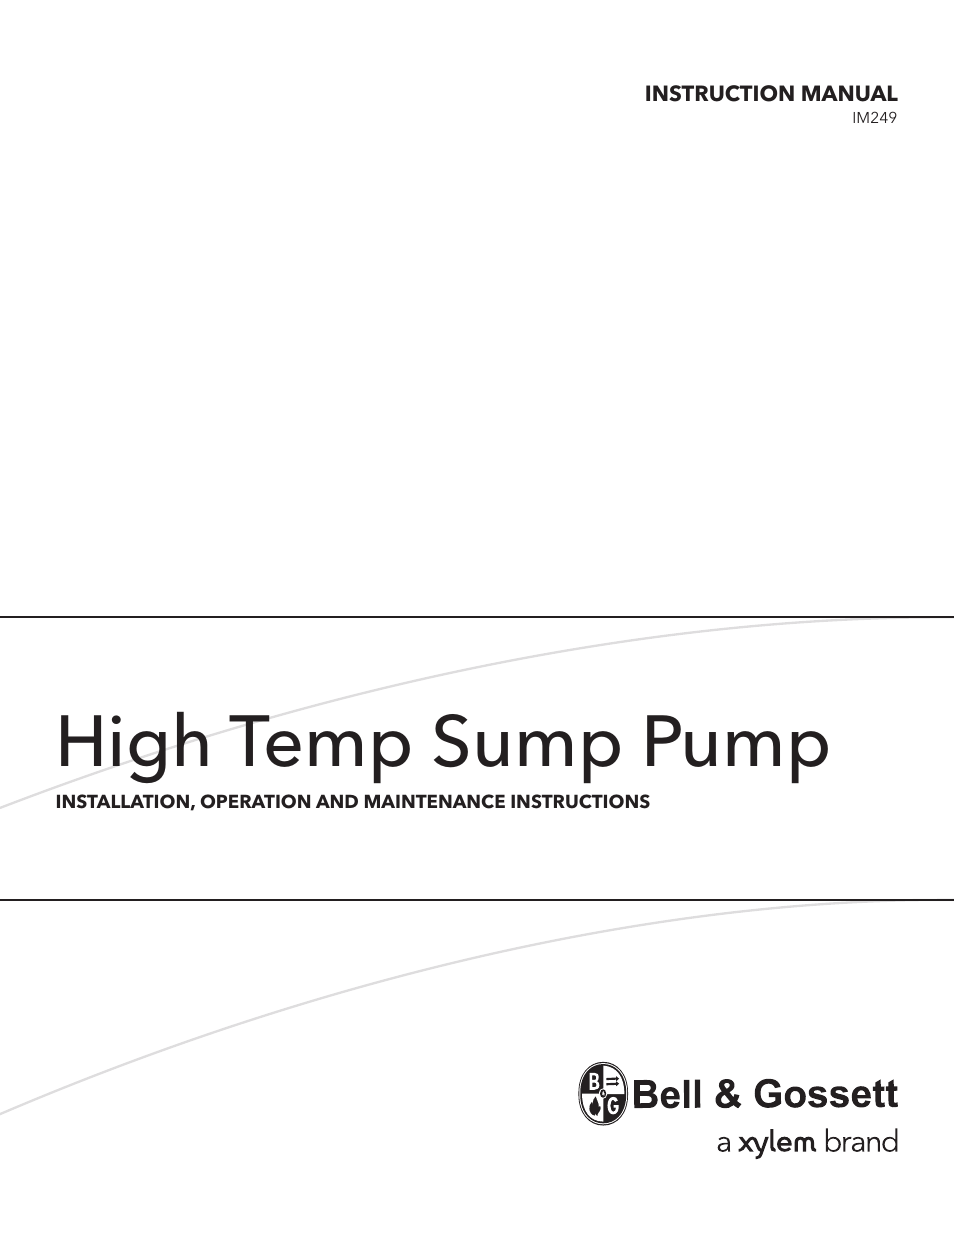 Bell & Gossett IM249 High Temp Sump Pump User Manual